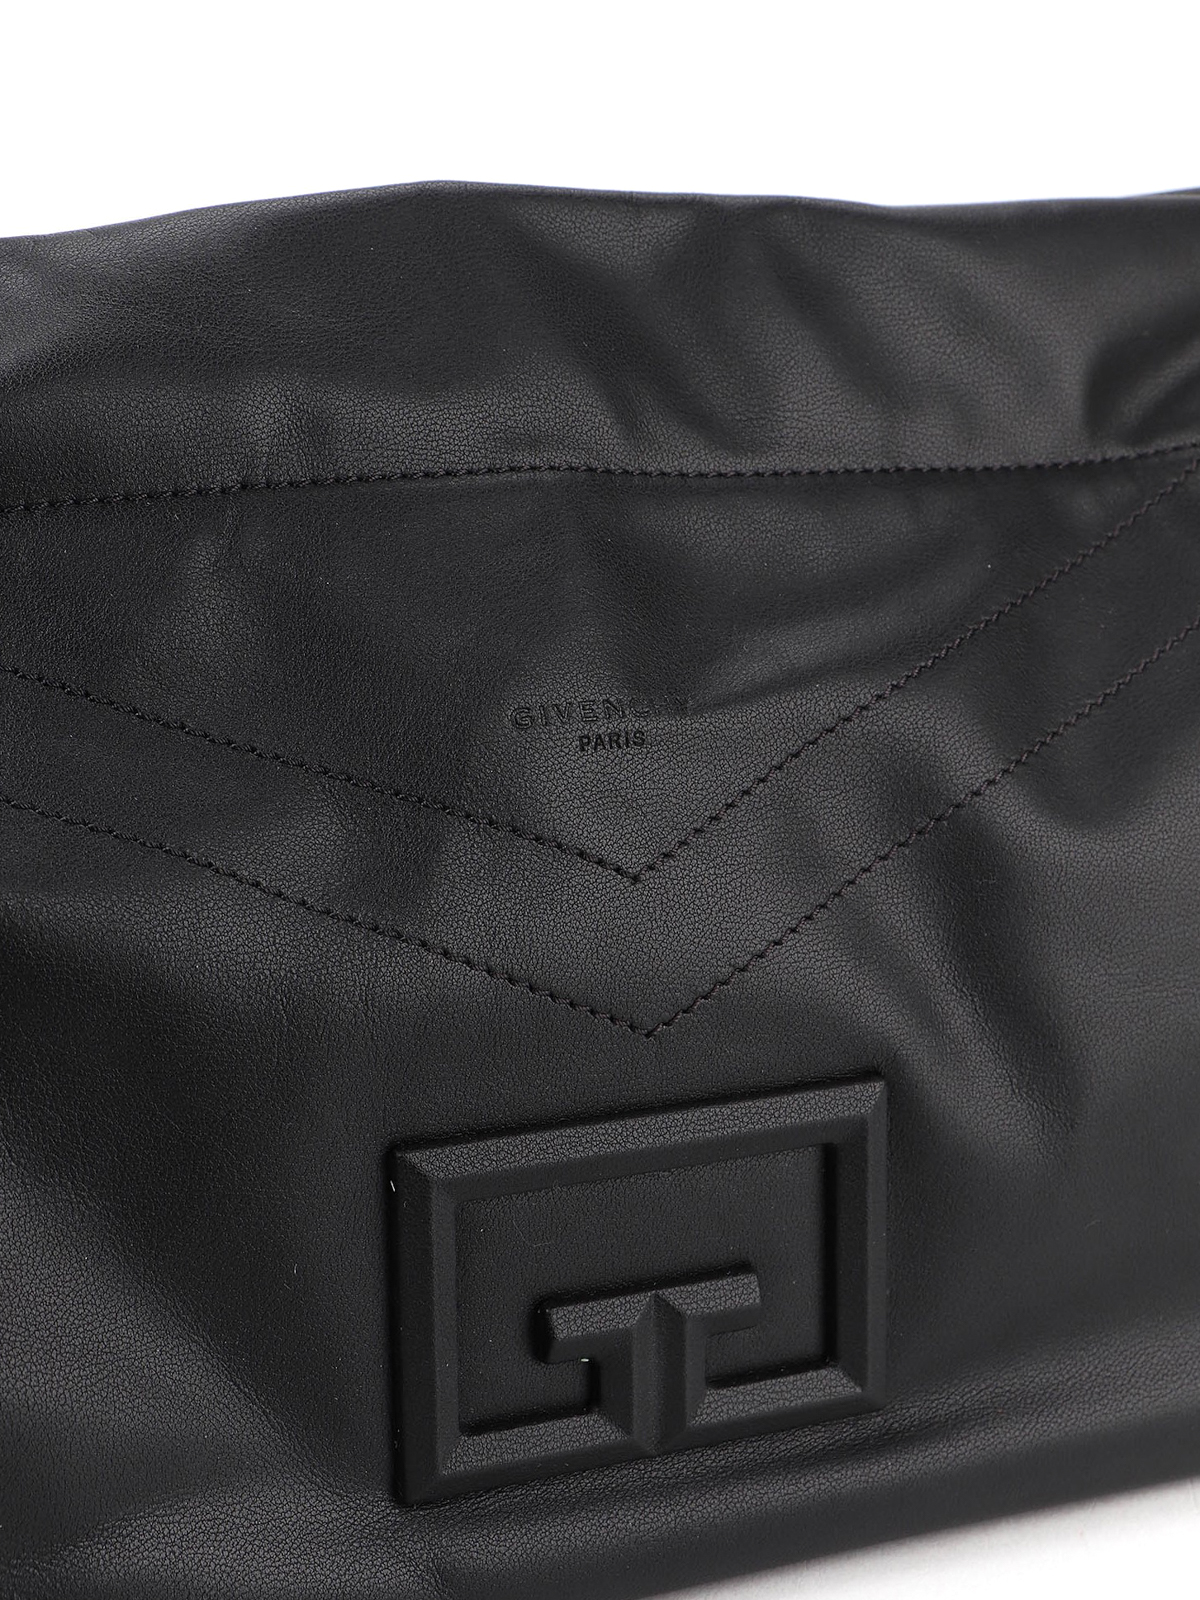 Shoulder bags Givenchy - ID93 large bag - BB50EJB0VT001 | iKRIX.com